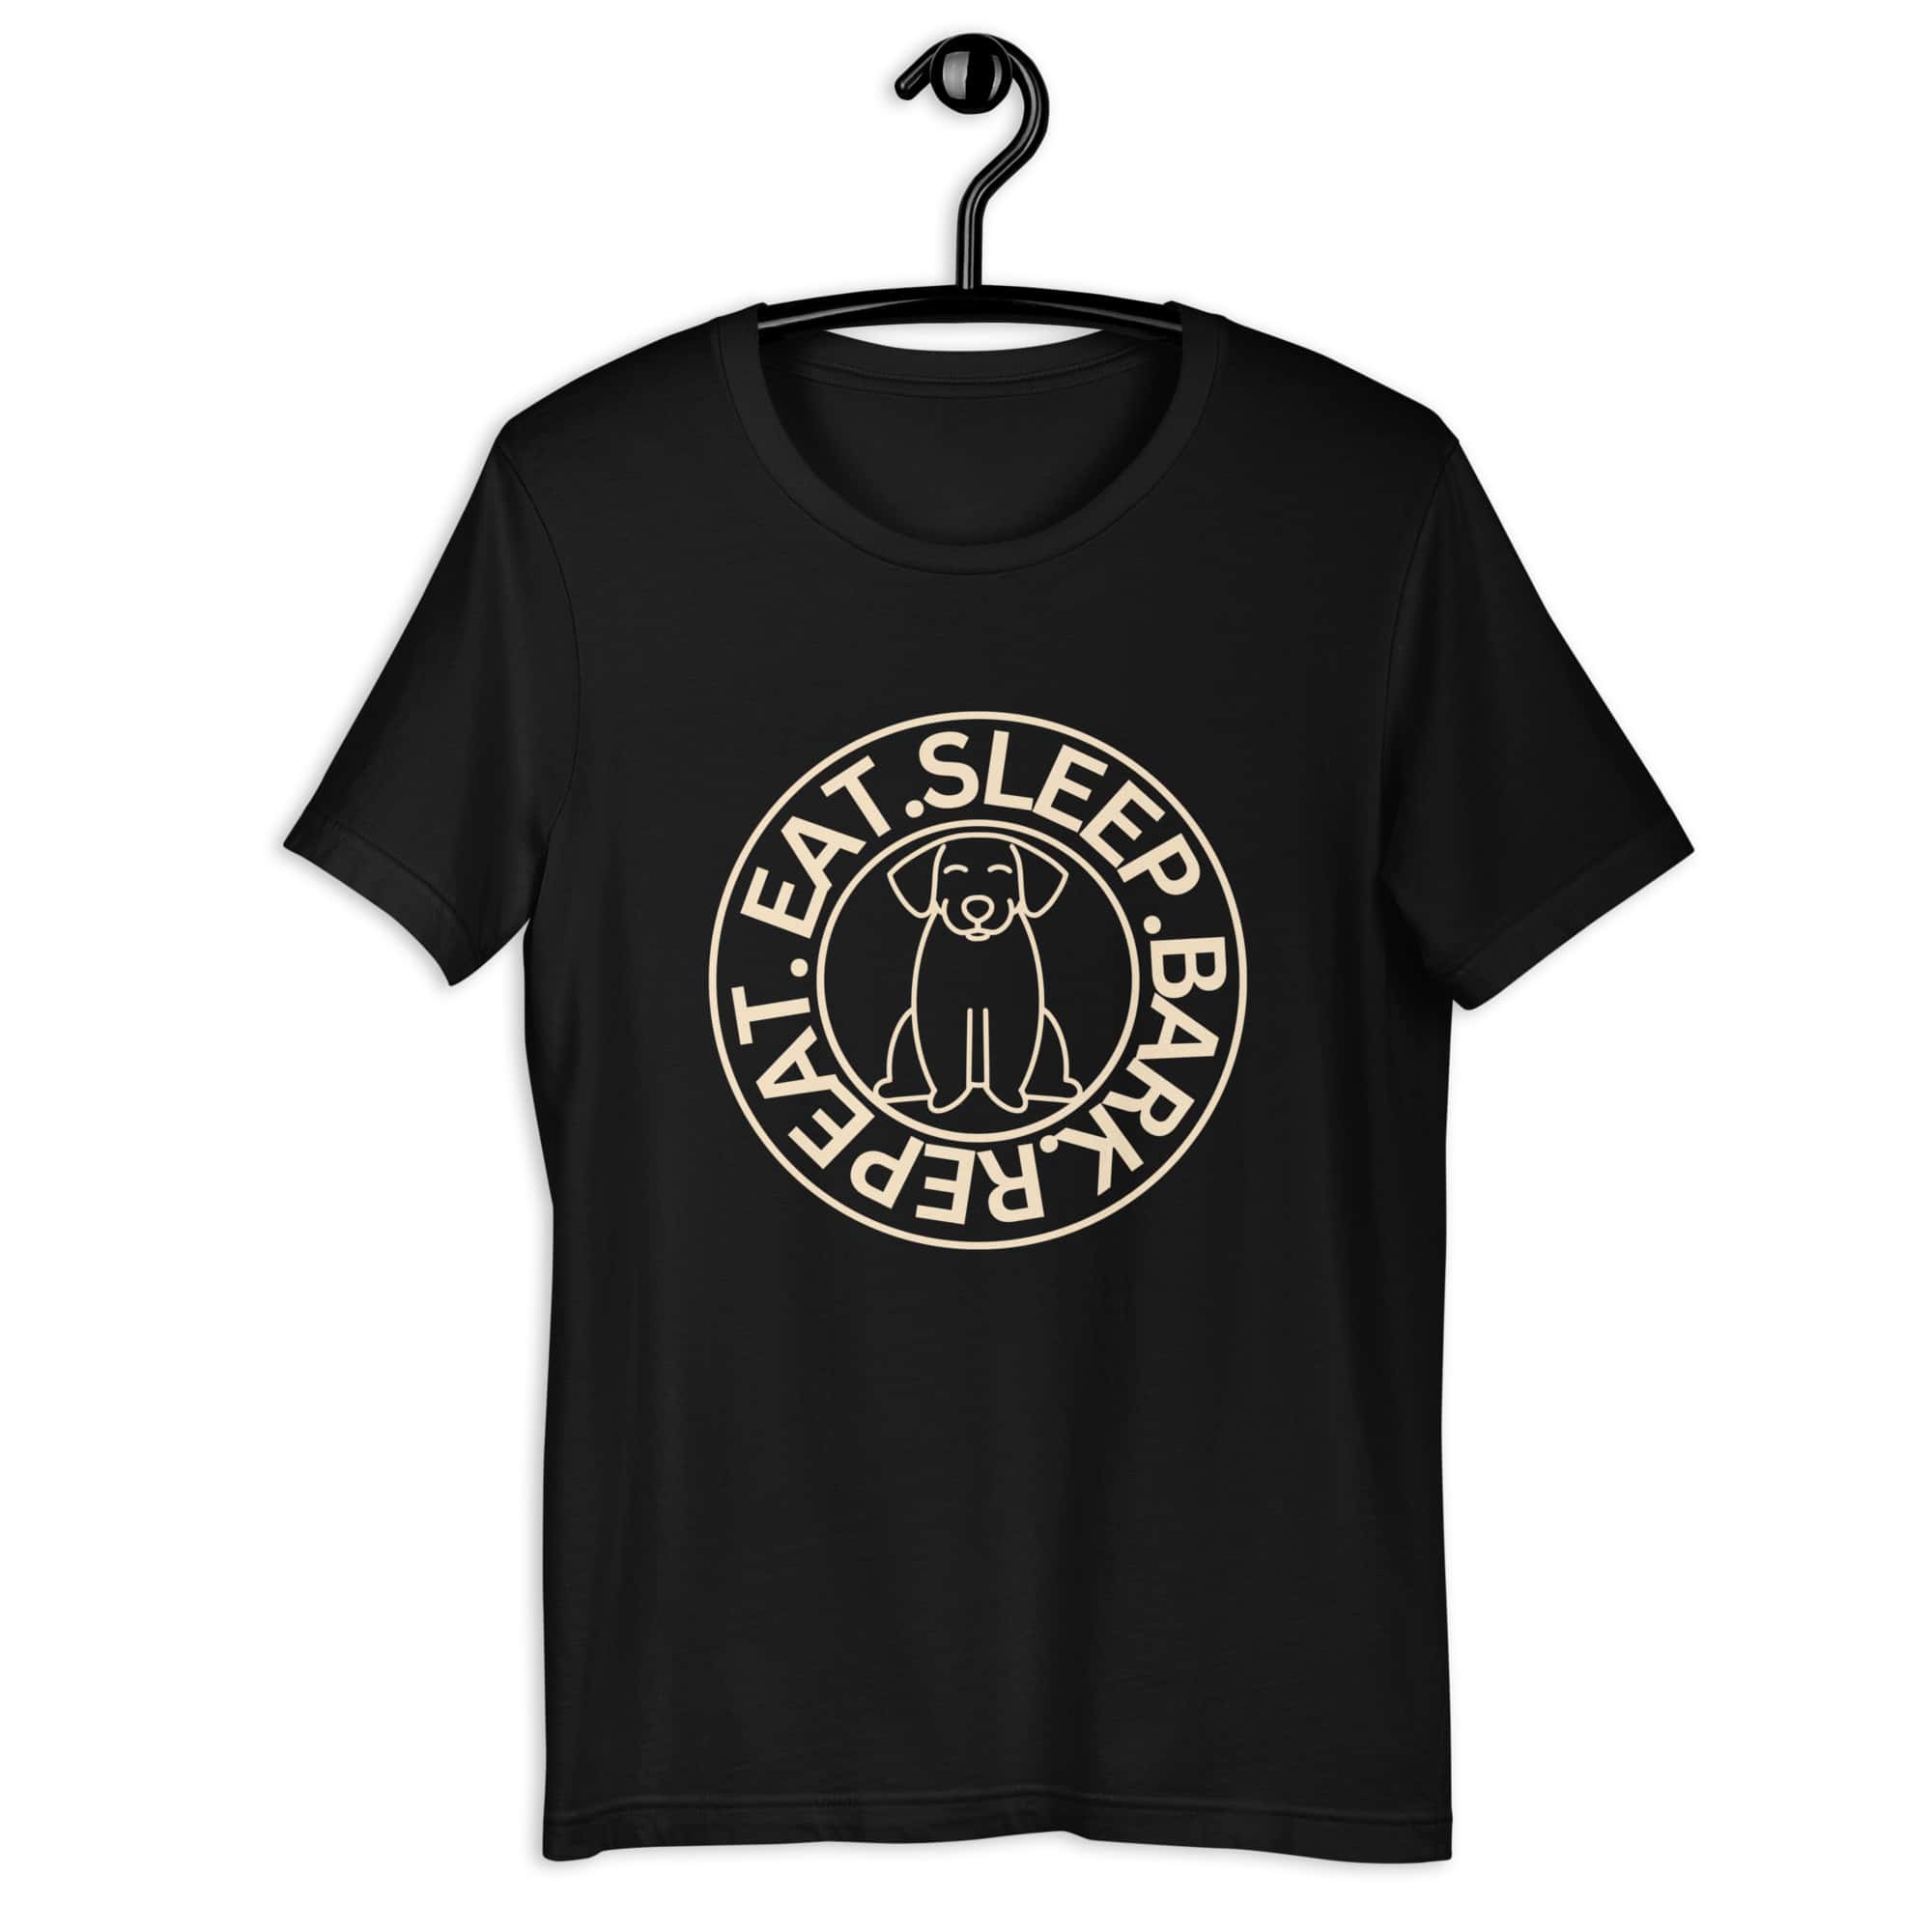 Eat Sleep Bark Repeat Ransylvanian Hound (Erdélyi Kopó) Unisex T-Shirt. Black